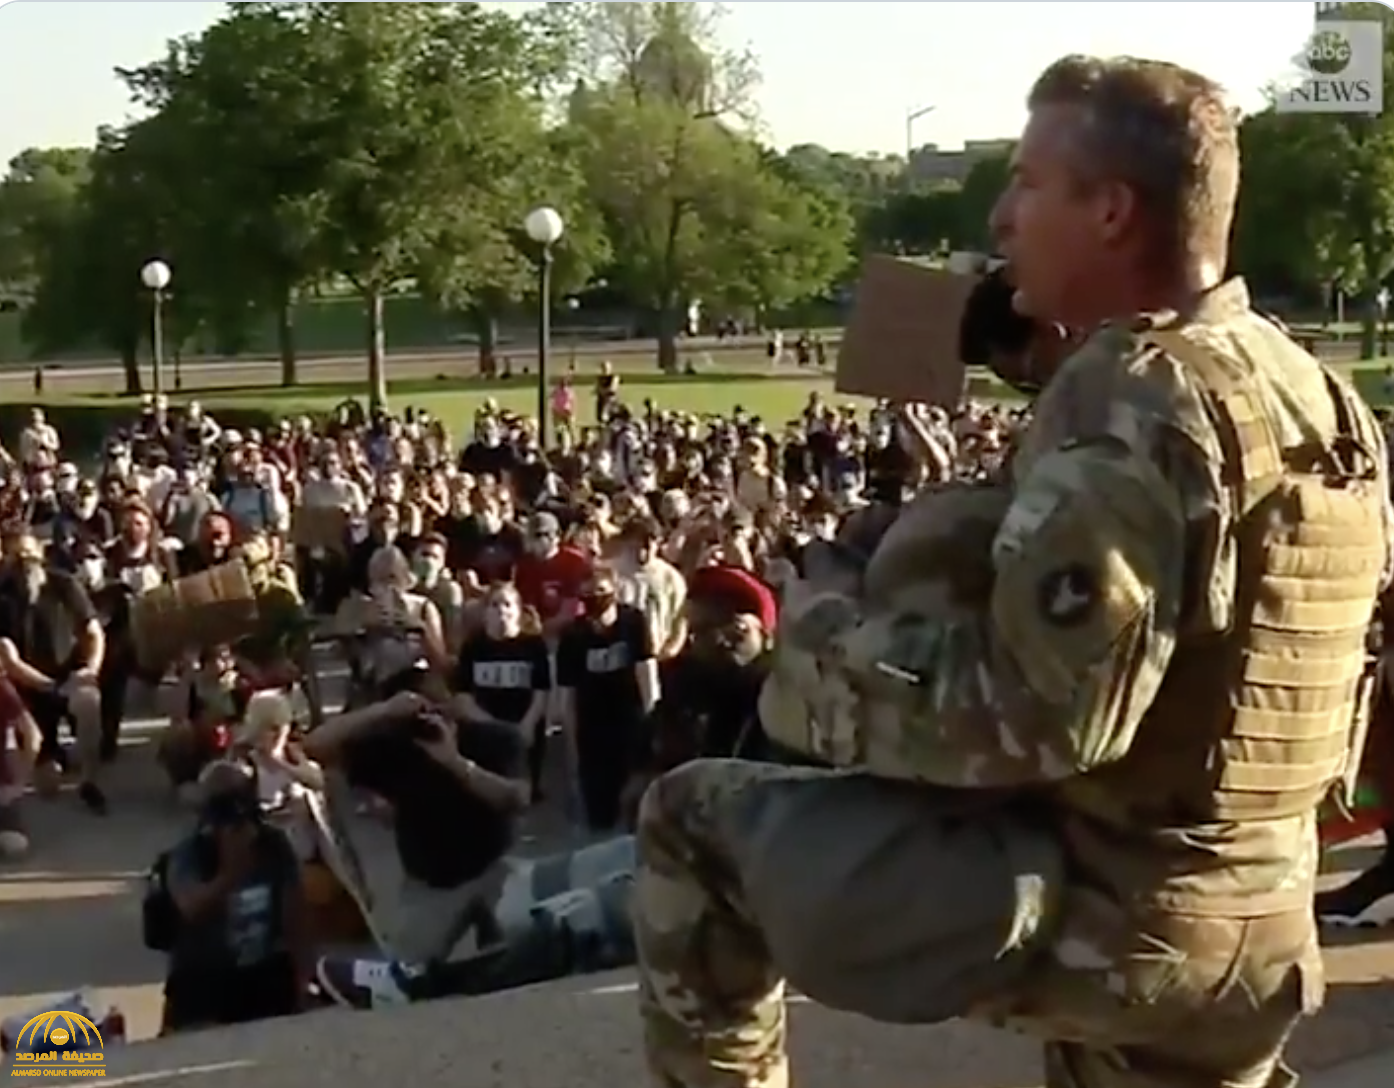 بالفيديو: ضابط بالحرس الوطني يتضامن مع المتظاهرين الأمريكيين ويعلن حمايتهم.. شاهد ردة فعلهم